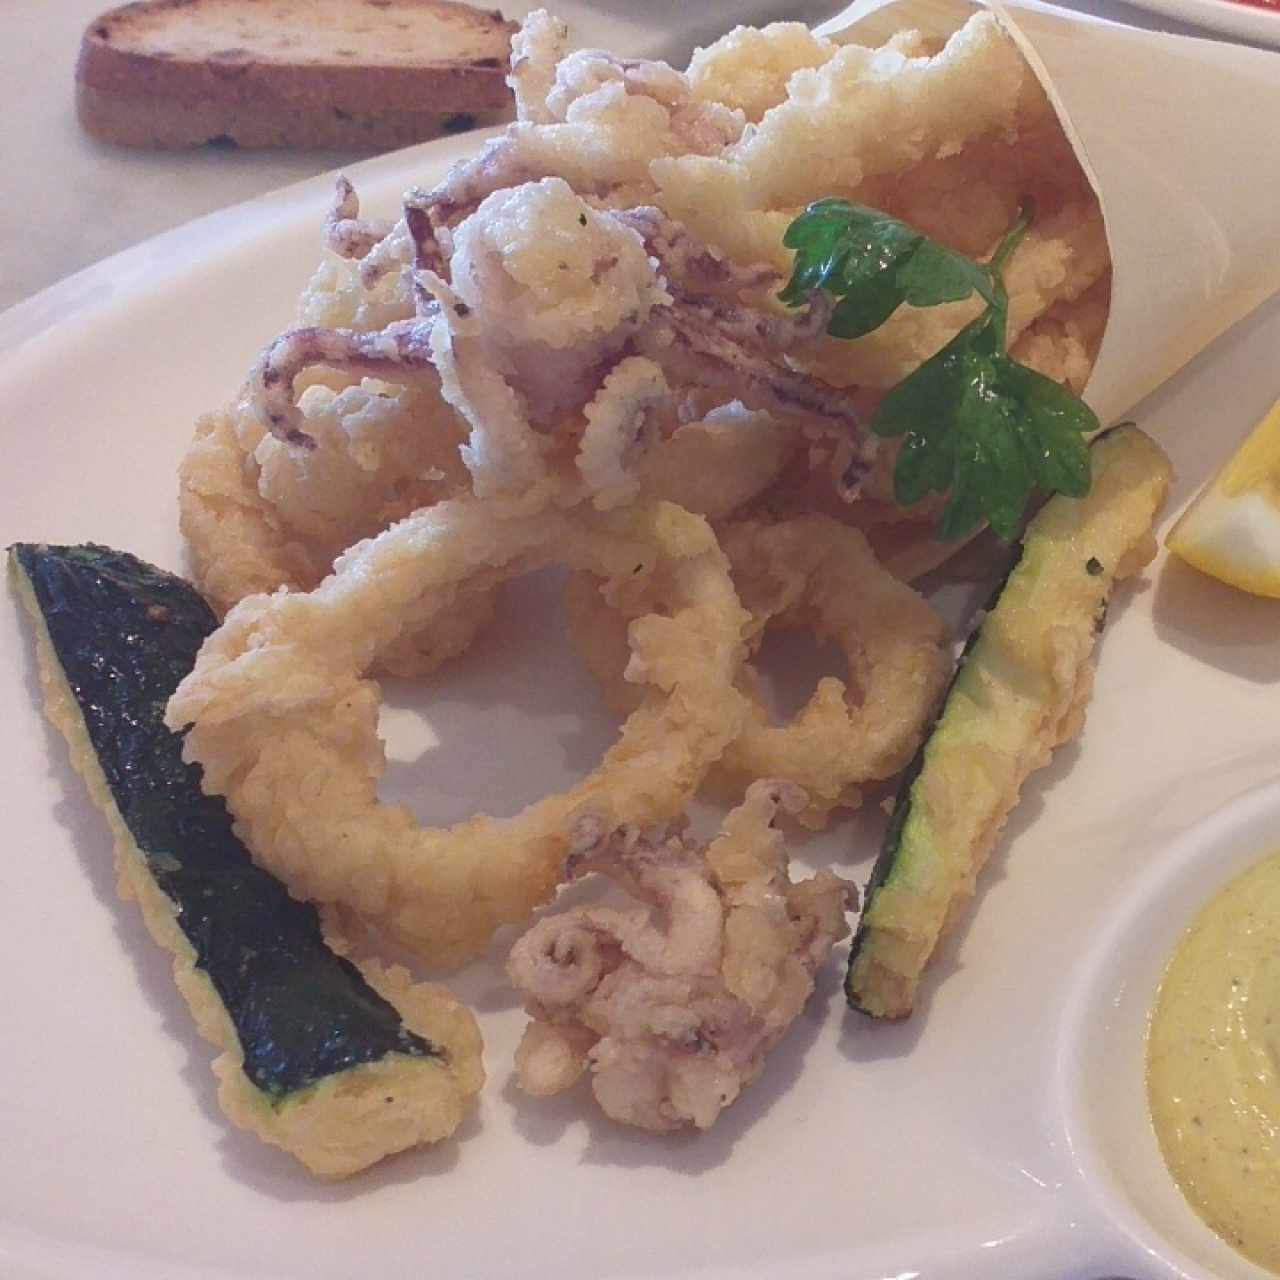 Fritto misto-calamares & bastones de zucchinis, mayonesa de curry